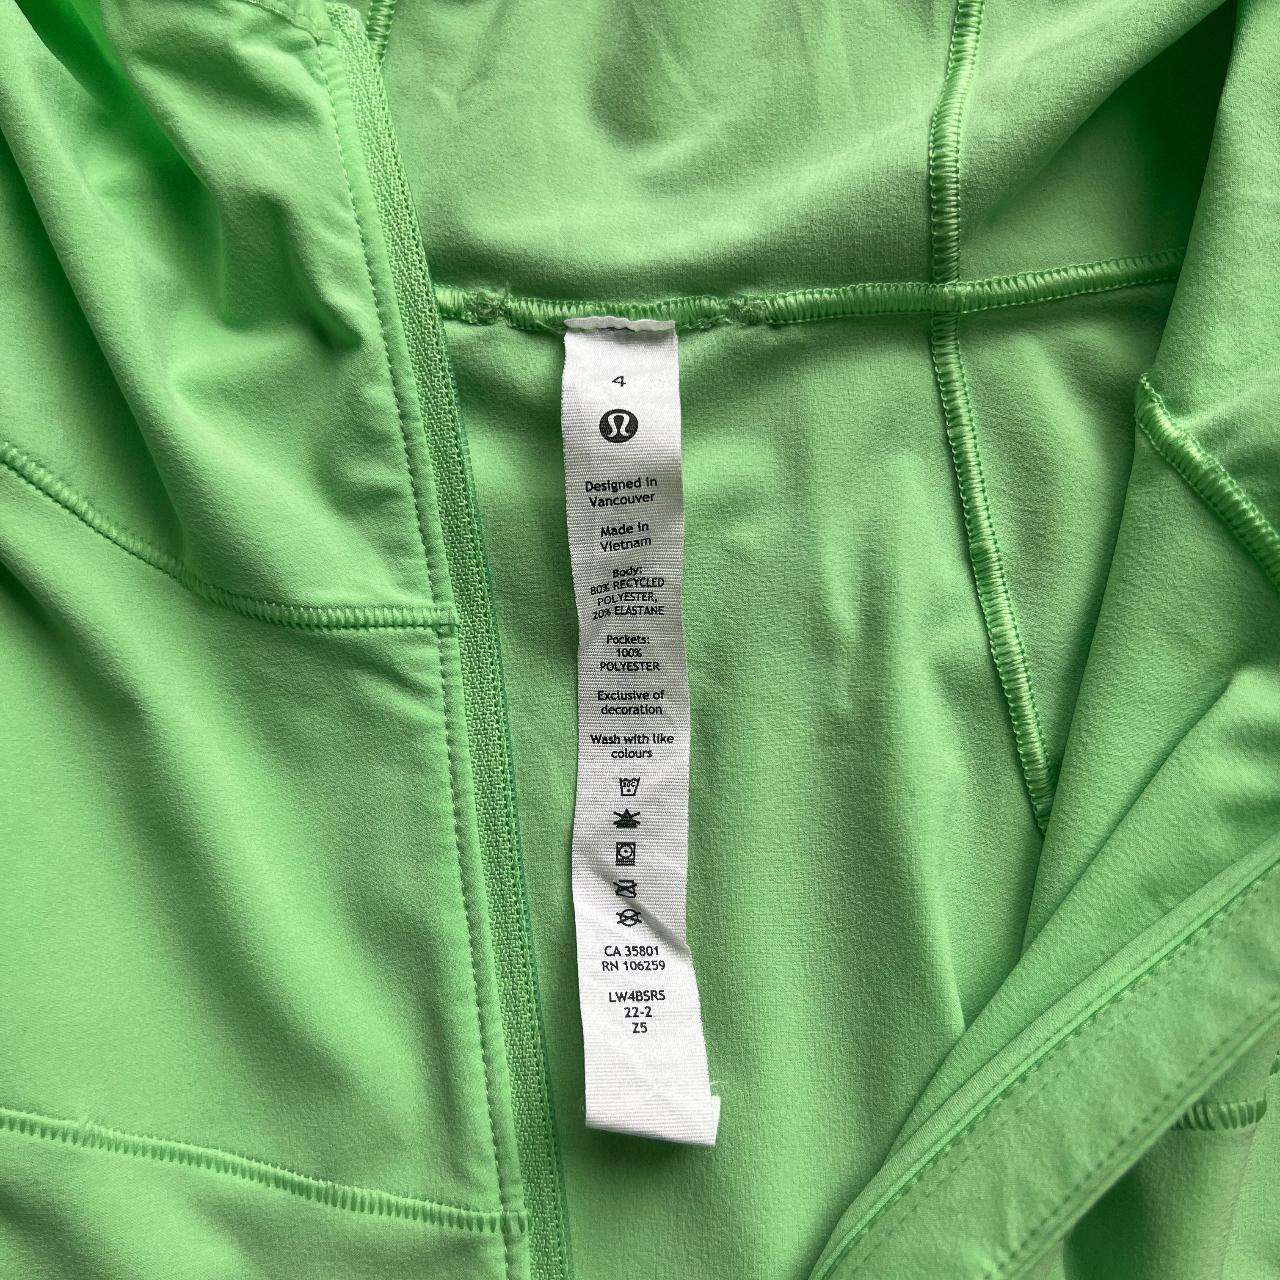 Lulu Lemon jacket in mint green. Size 8. #yoga - Depop